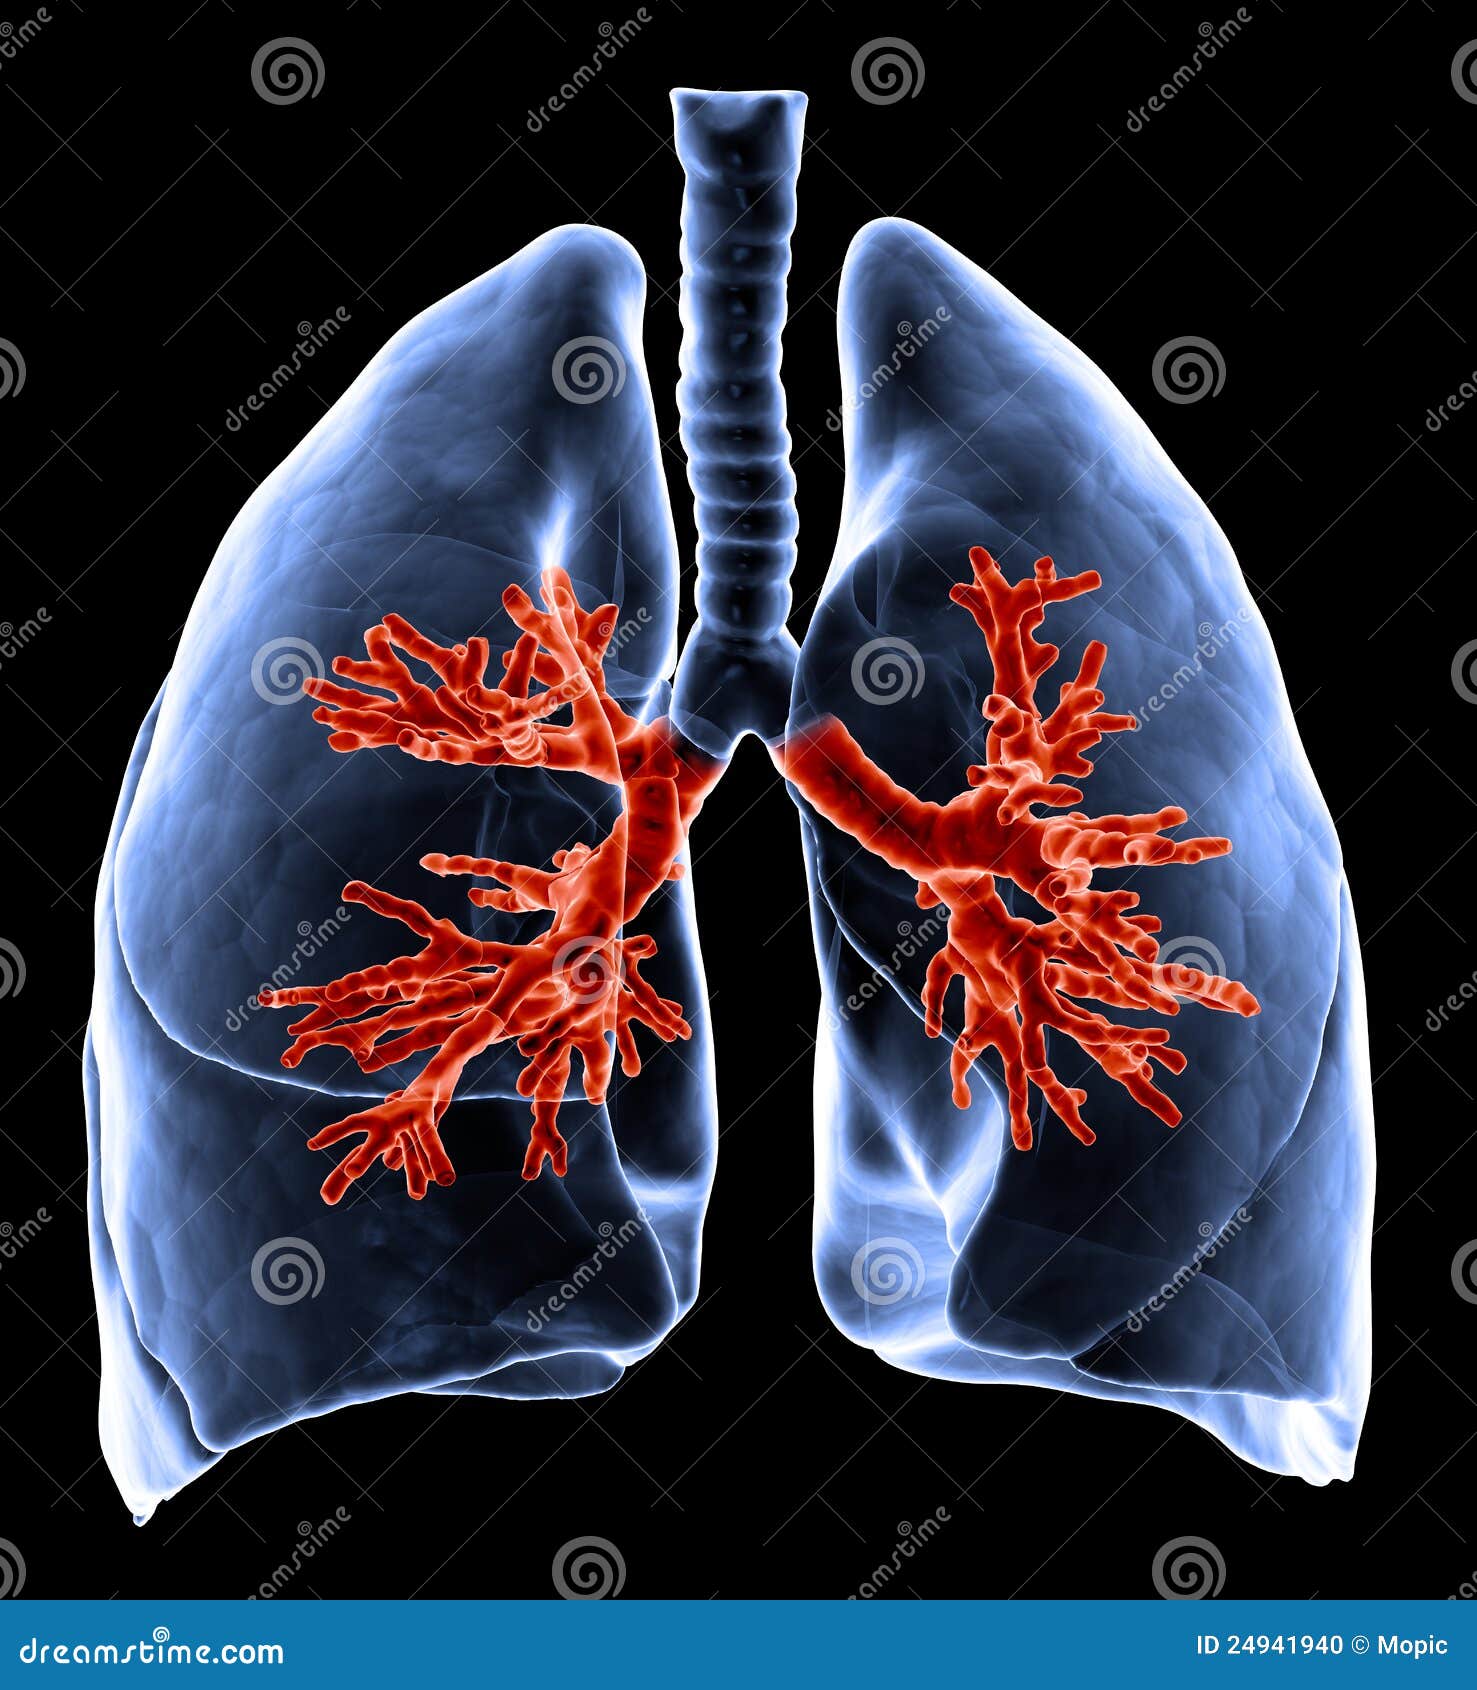 3D ilustración médica - pulmones con los bronquios visibles